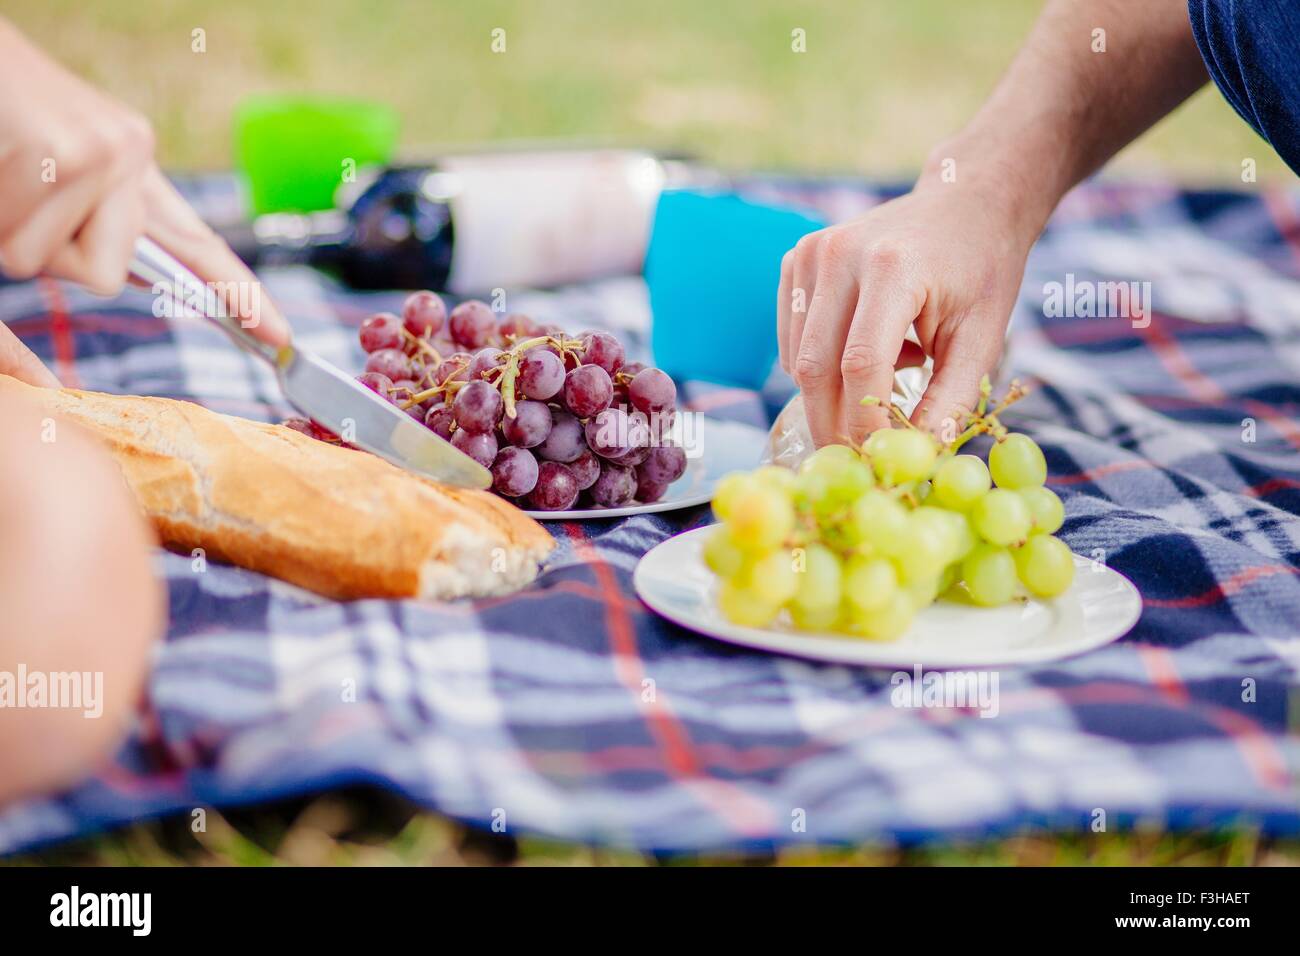 Portrait de couples mains tendues pour les raisins on picnic blanket Banque D'Images